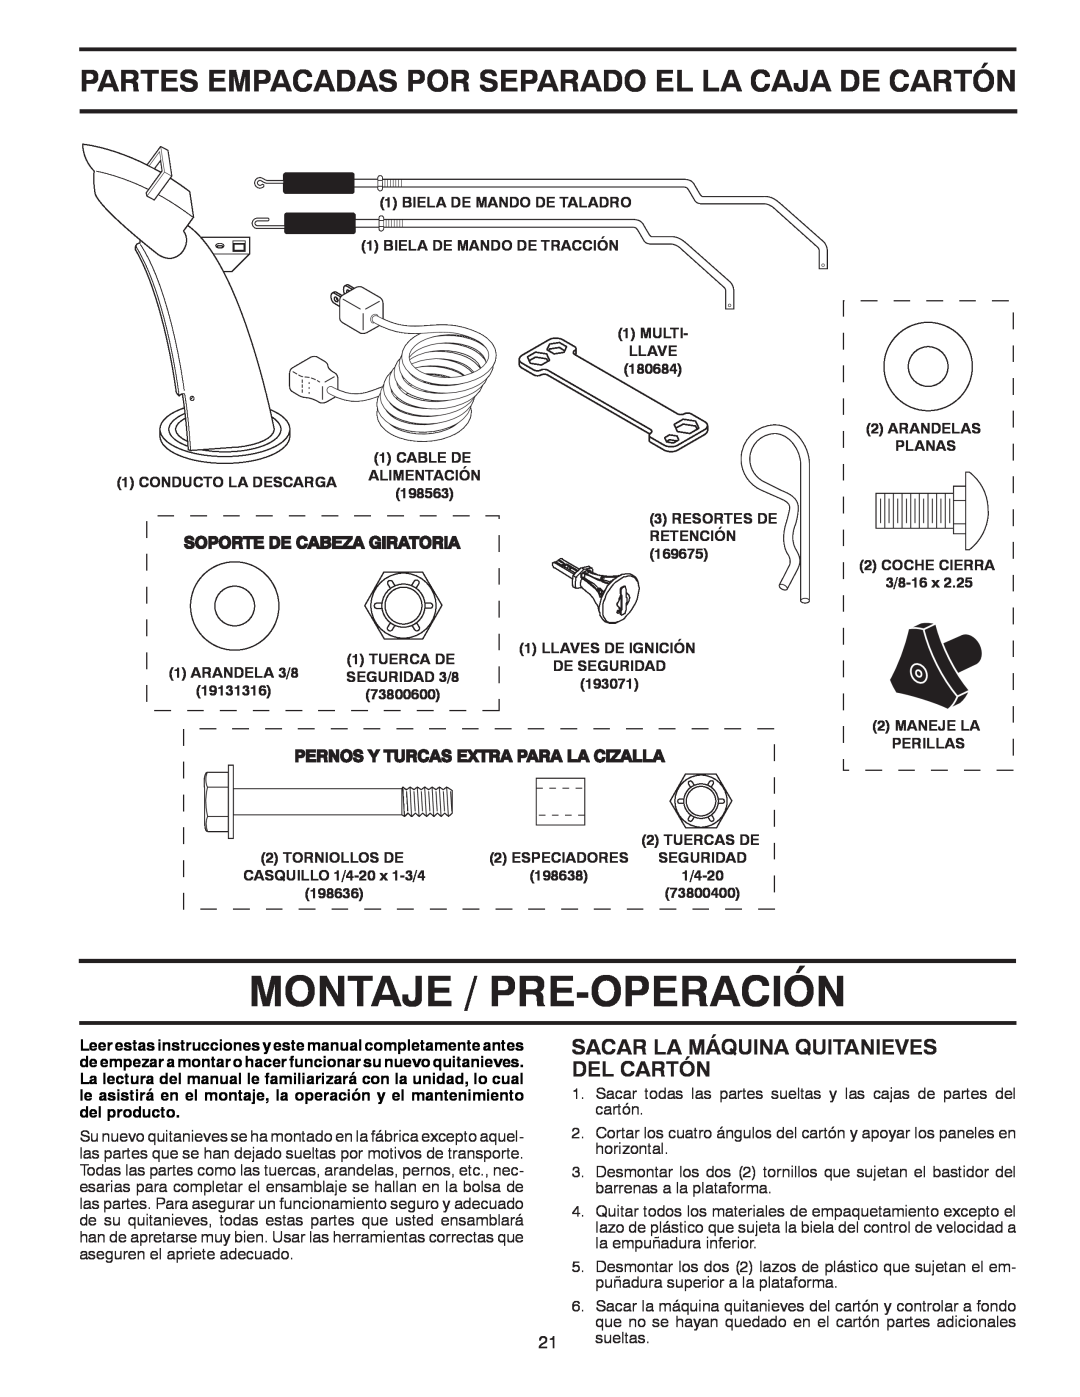 Poulan 96194000504 owner manual Montaje / Pre-Operación, Partes Empacadas Por Separado El La Caja De Cartón 